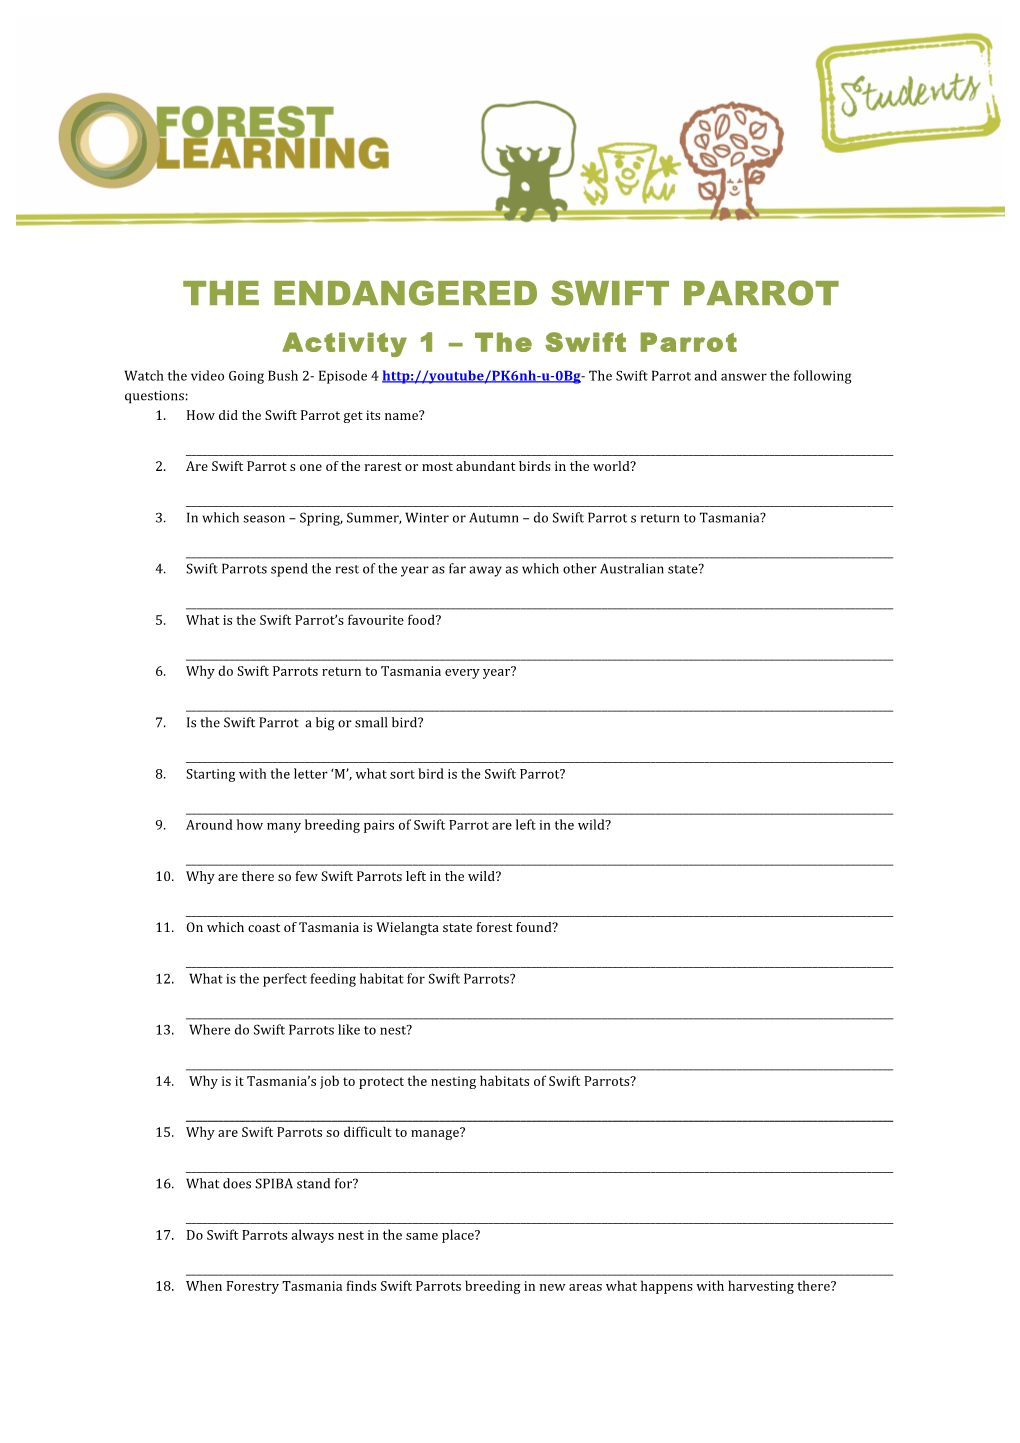 The Endangered Swift Parrot